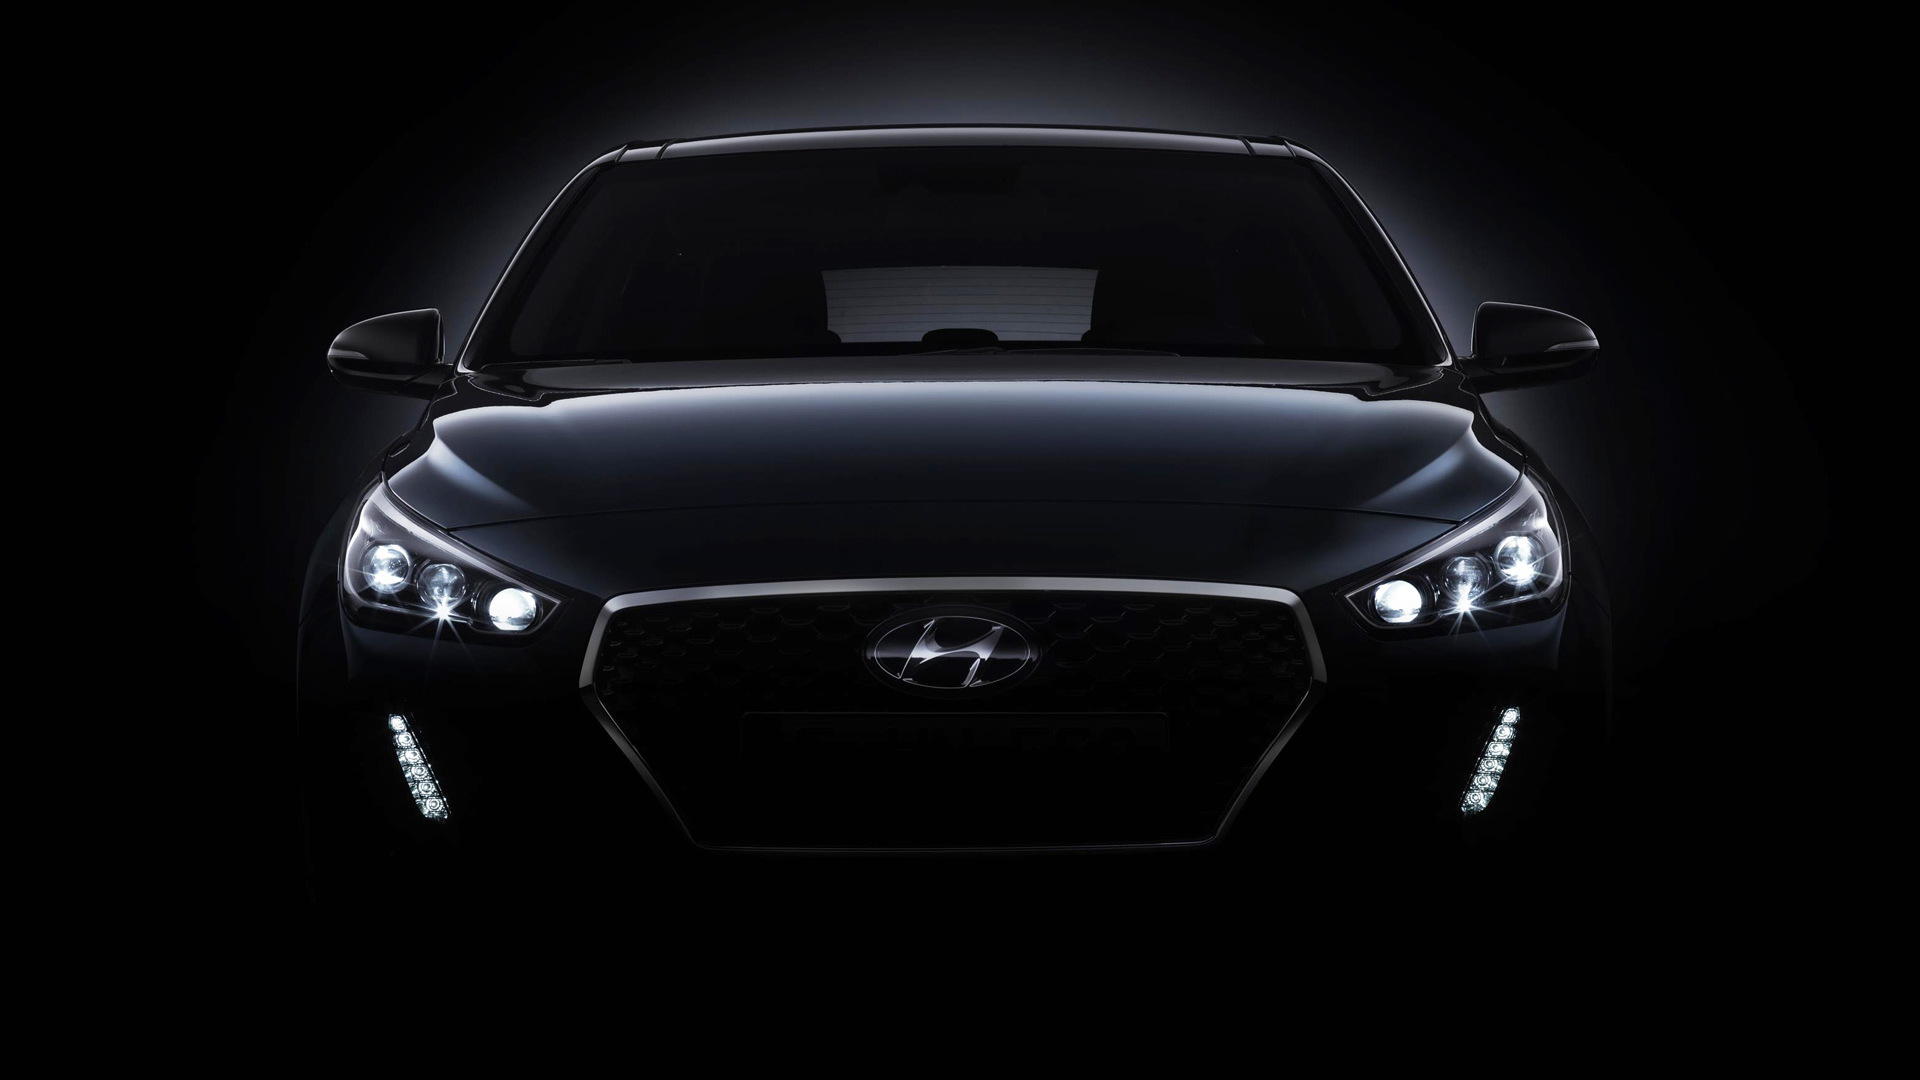 Teaser for 2017 Hyundai i30 debuting at 2016 Paris auto show